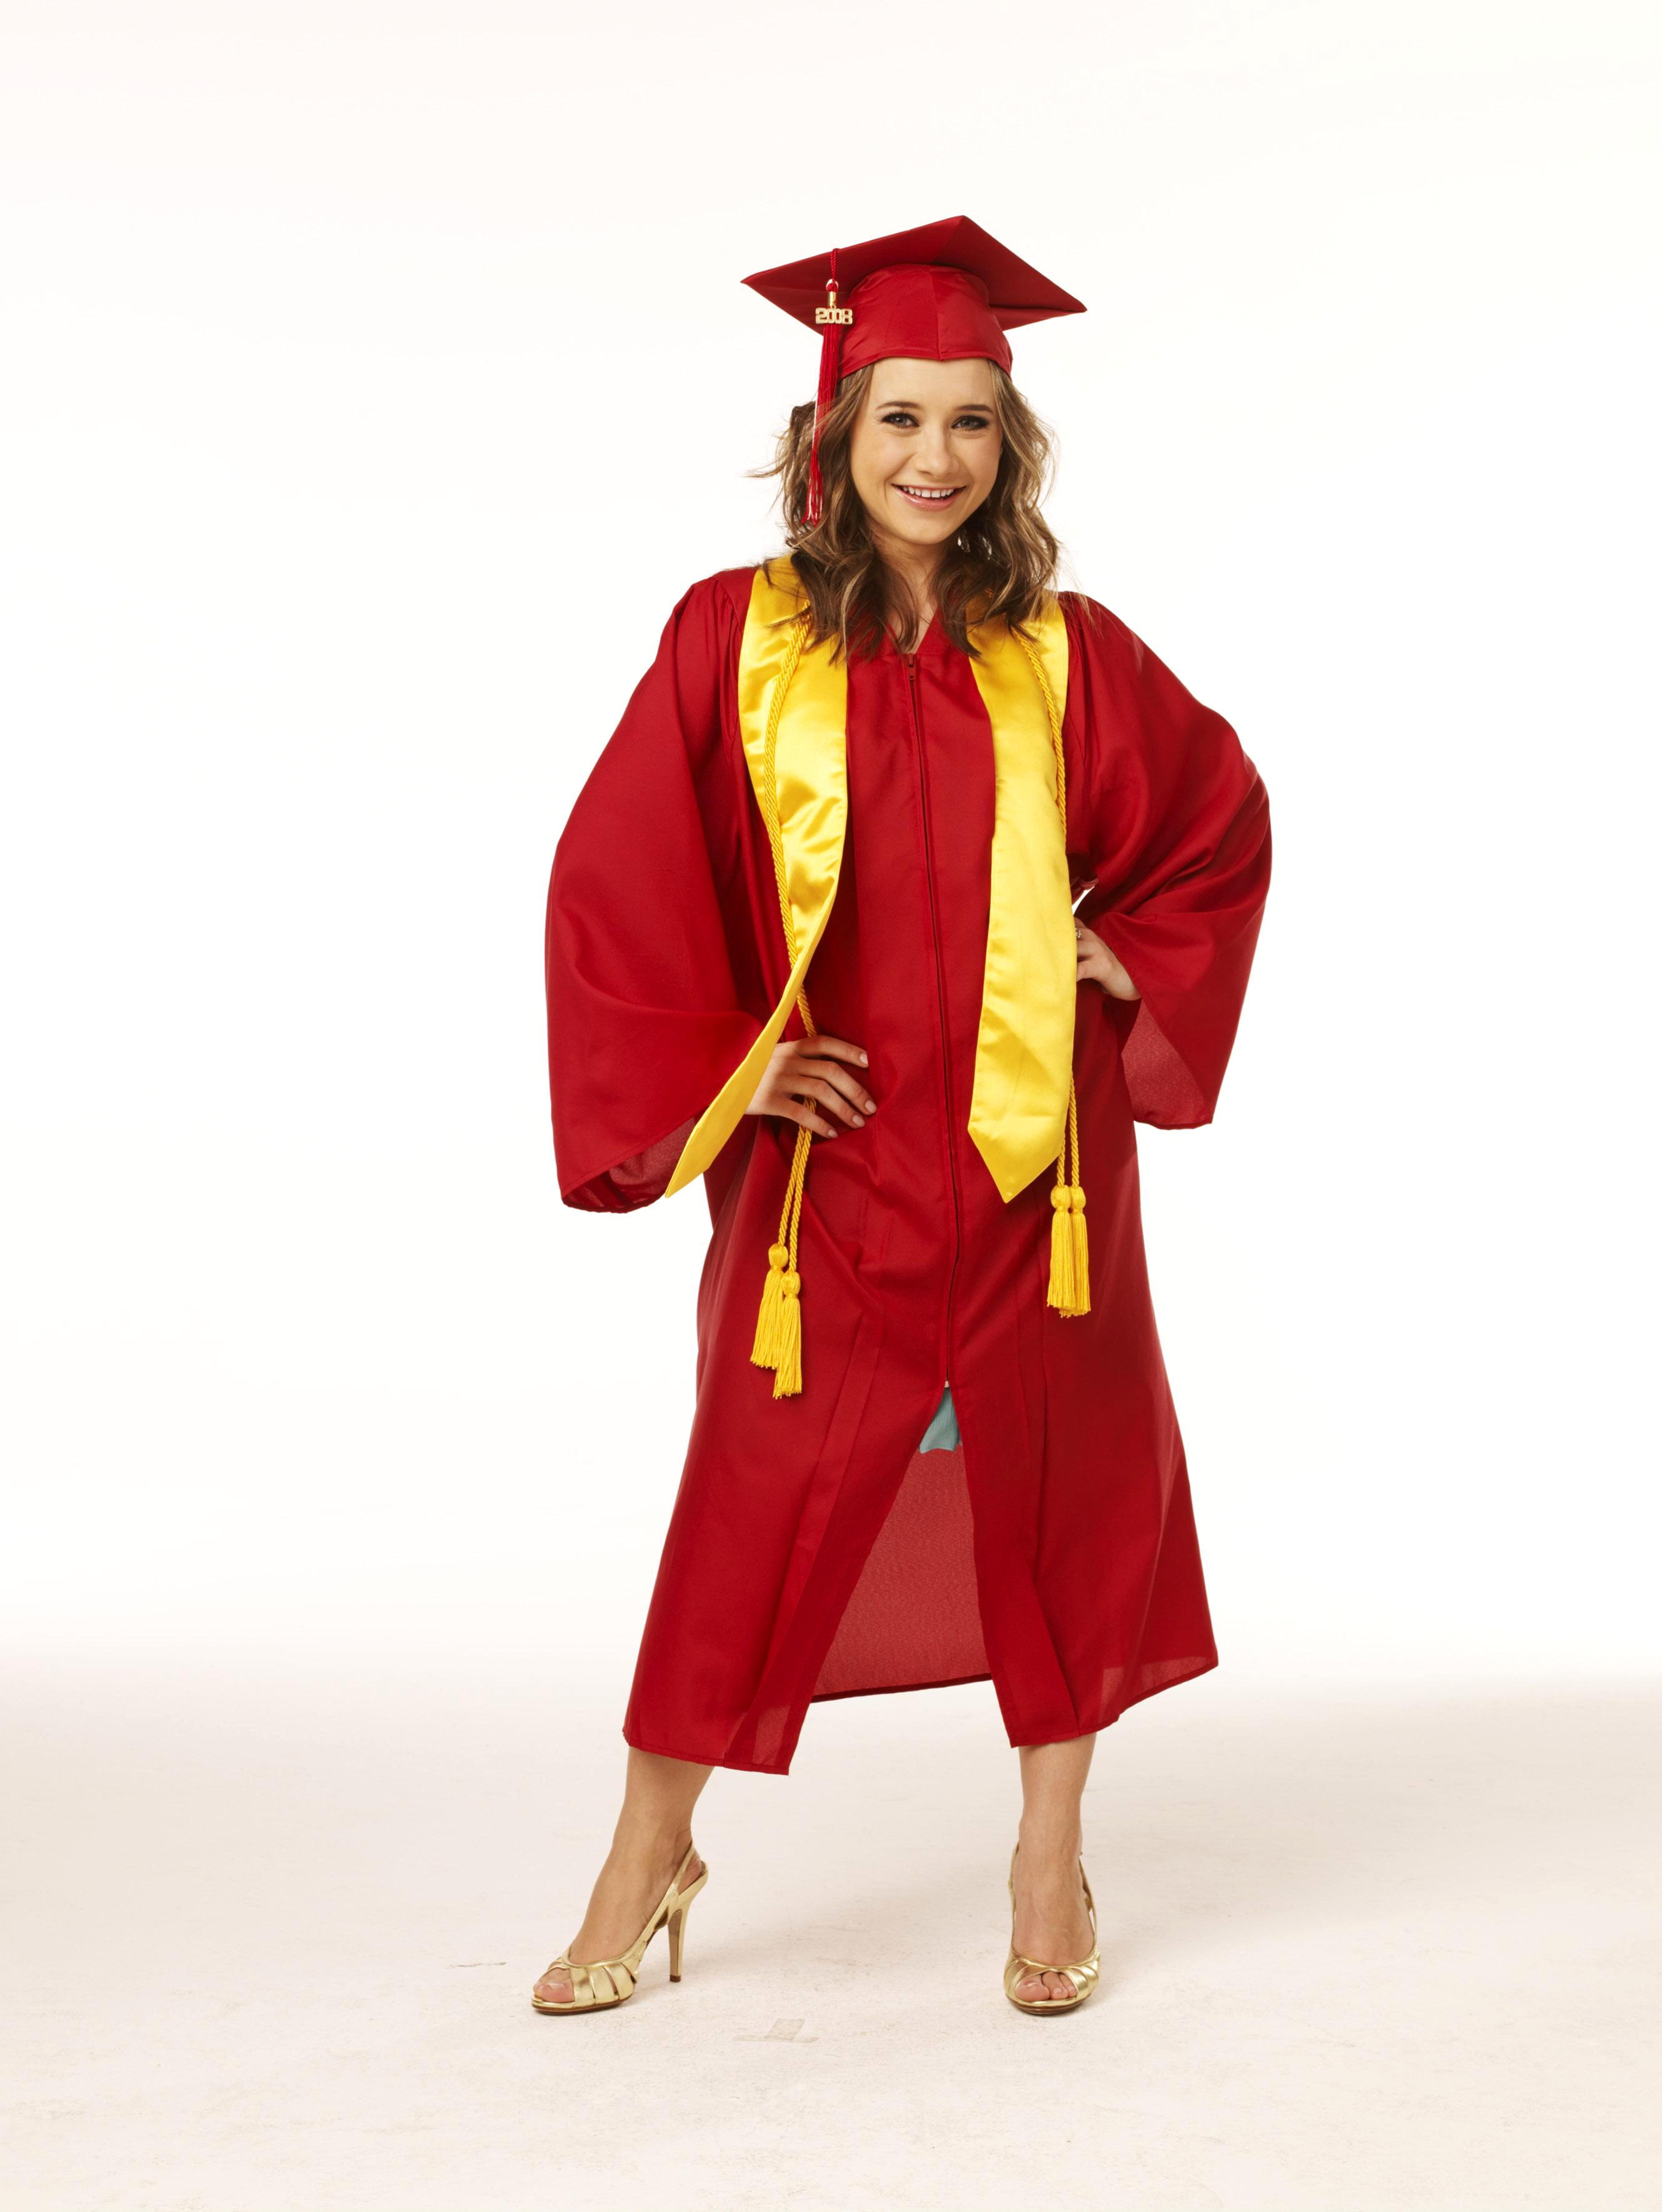 Olesya Rulin stars as Kelsi Nielsen in Walt Disney Pictures' High School Musical 3: Senior Year (2008)